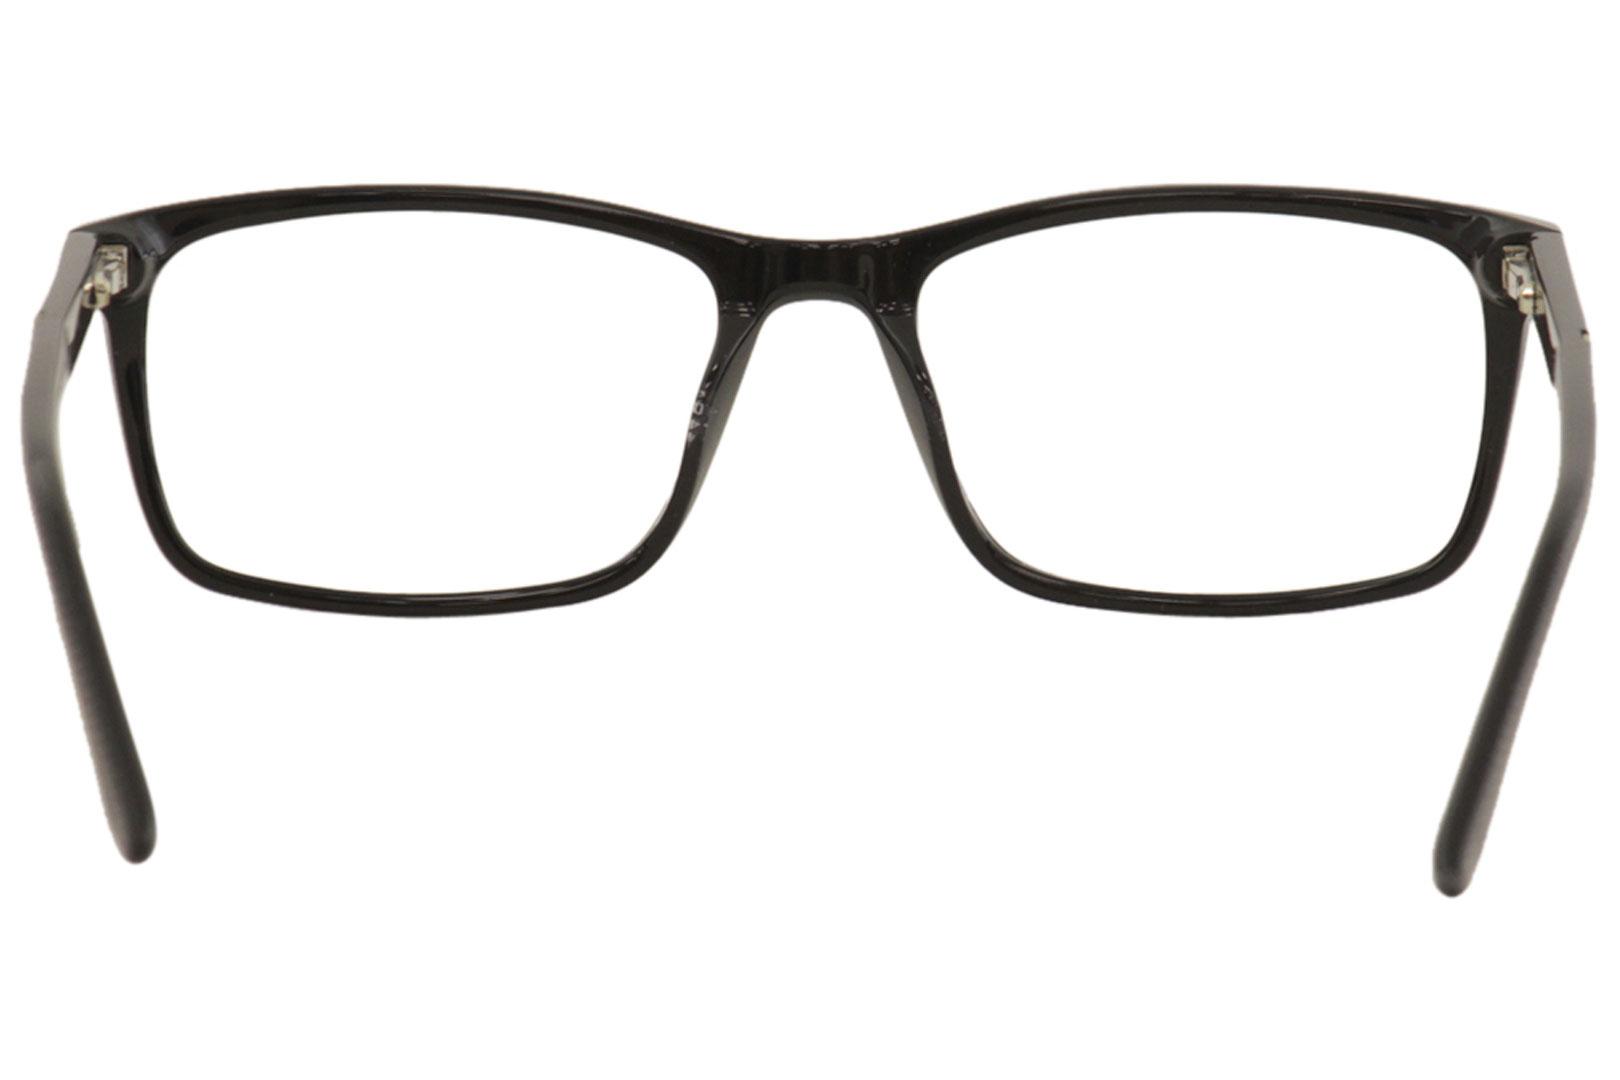 New Balance Men's Eyeglasses NB510 NB/510 Full Rim Optical Frame ...